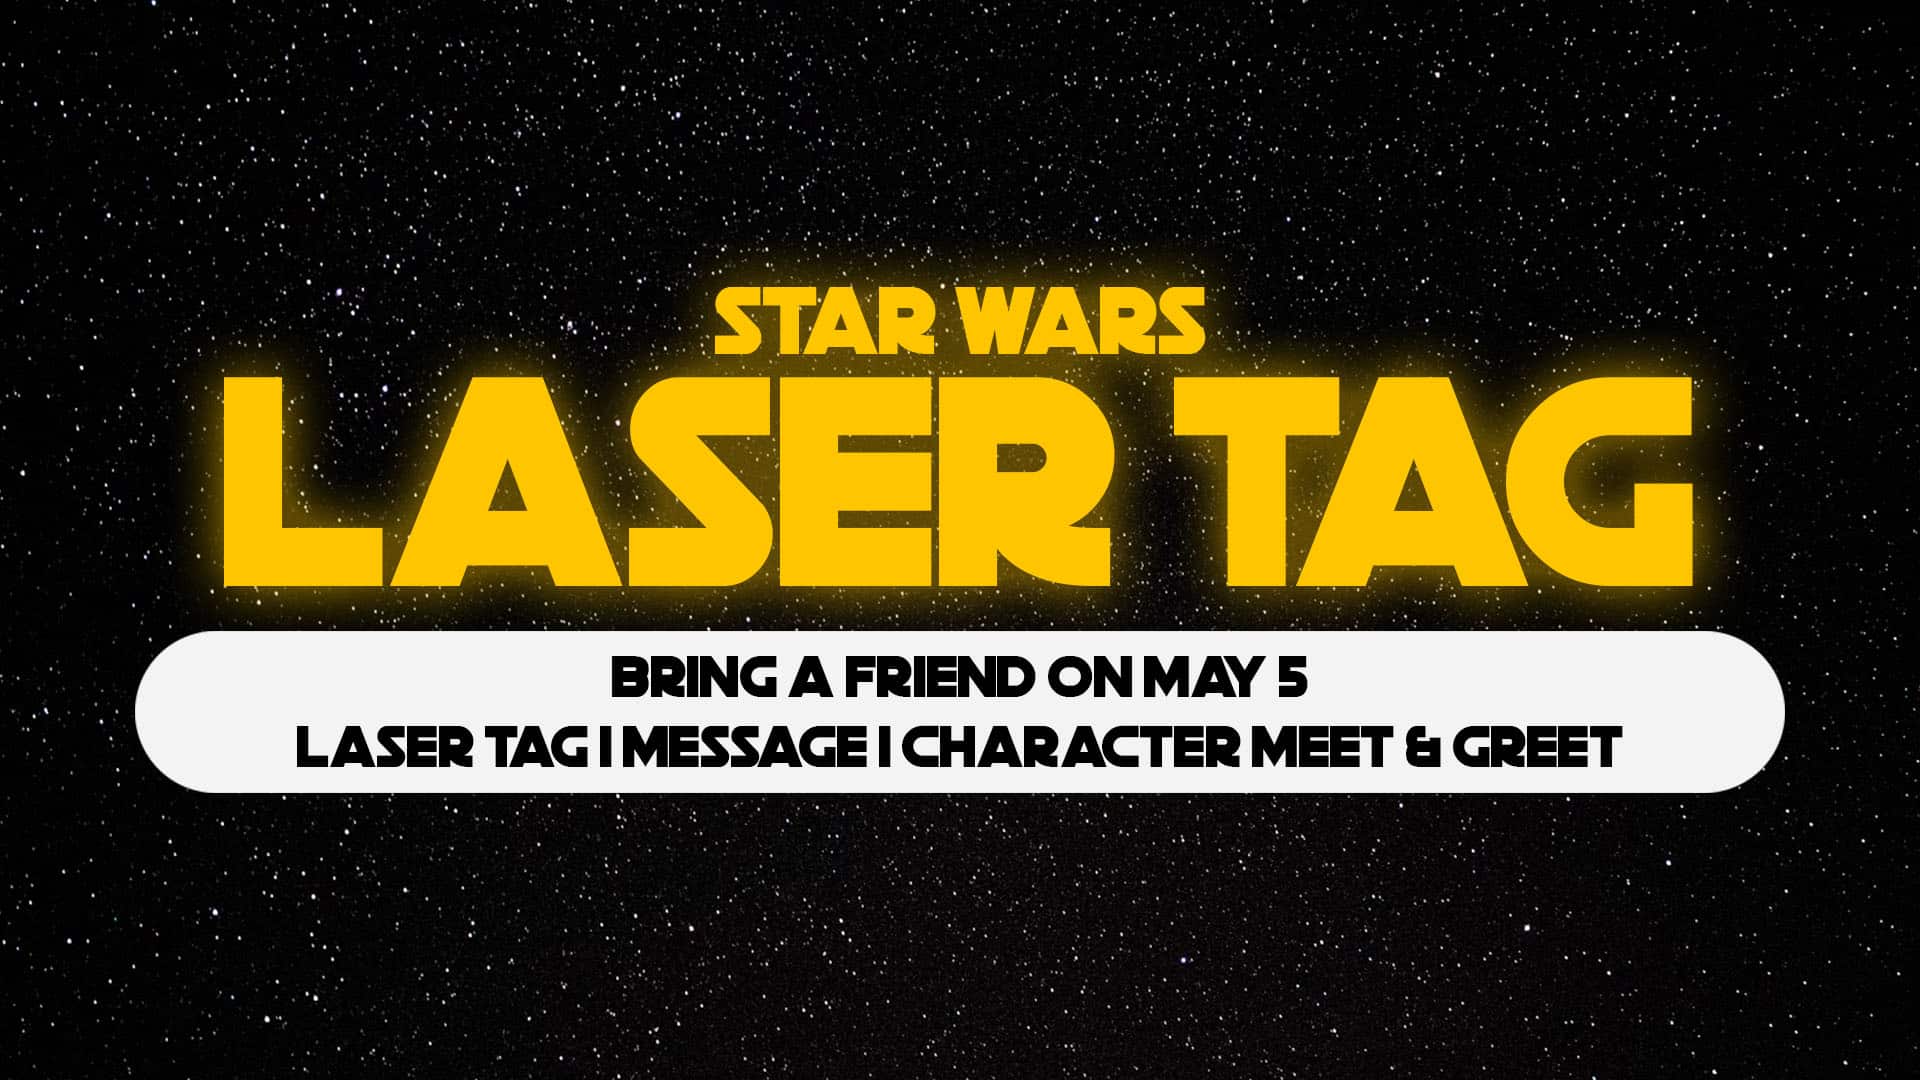 Star Wars Laser Tag title image